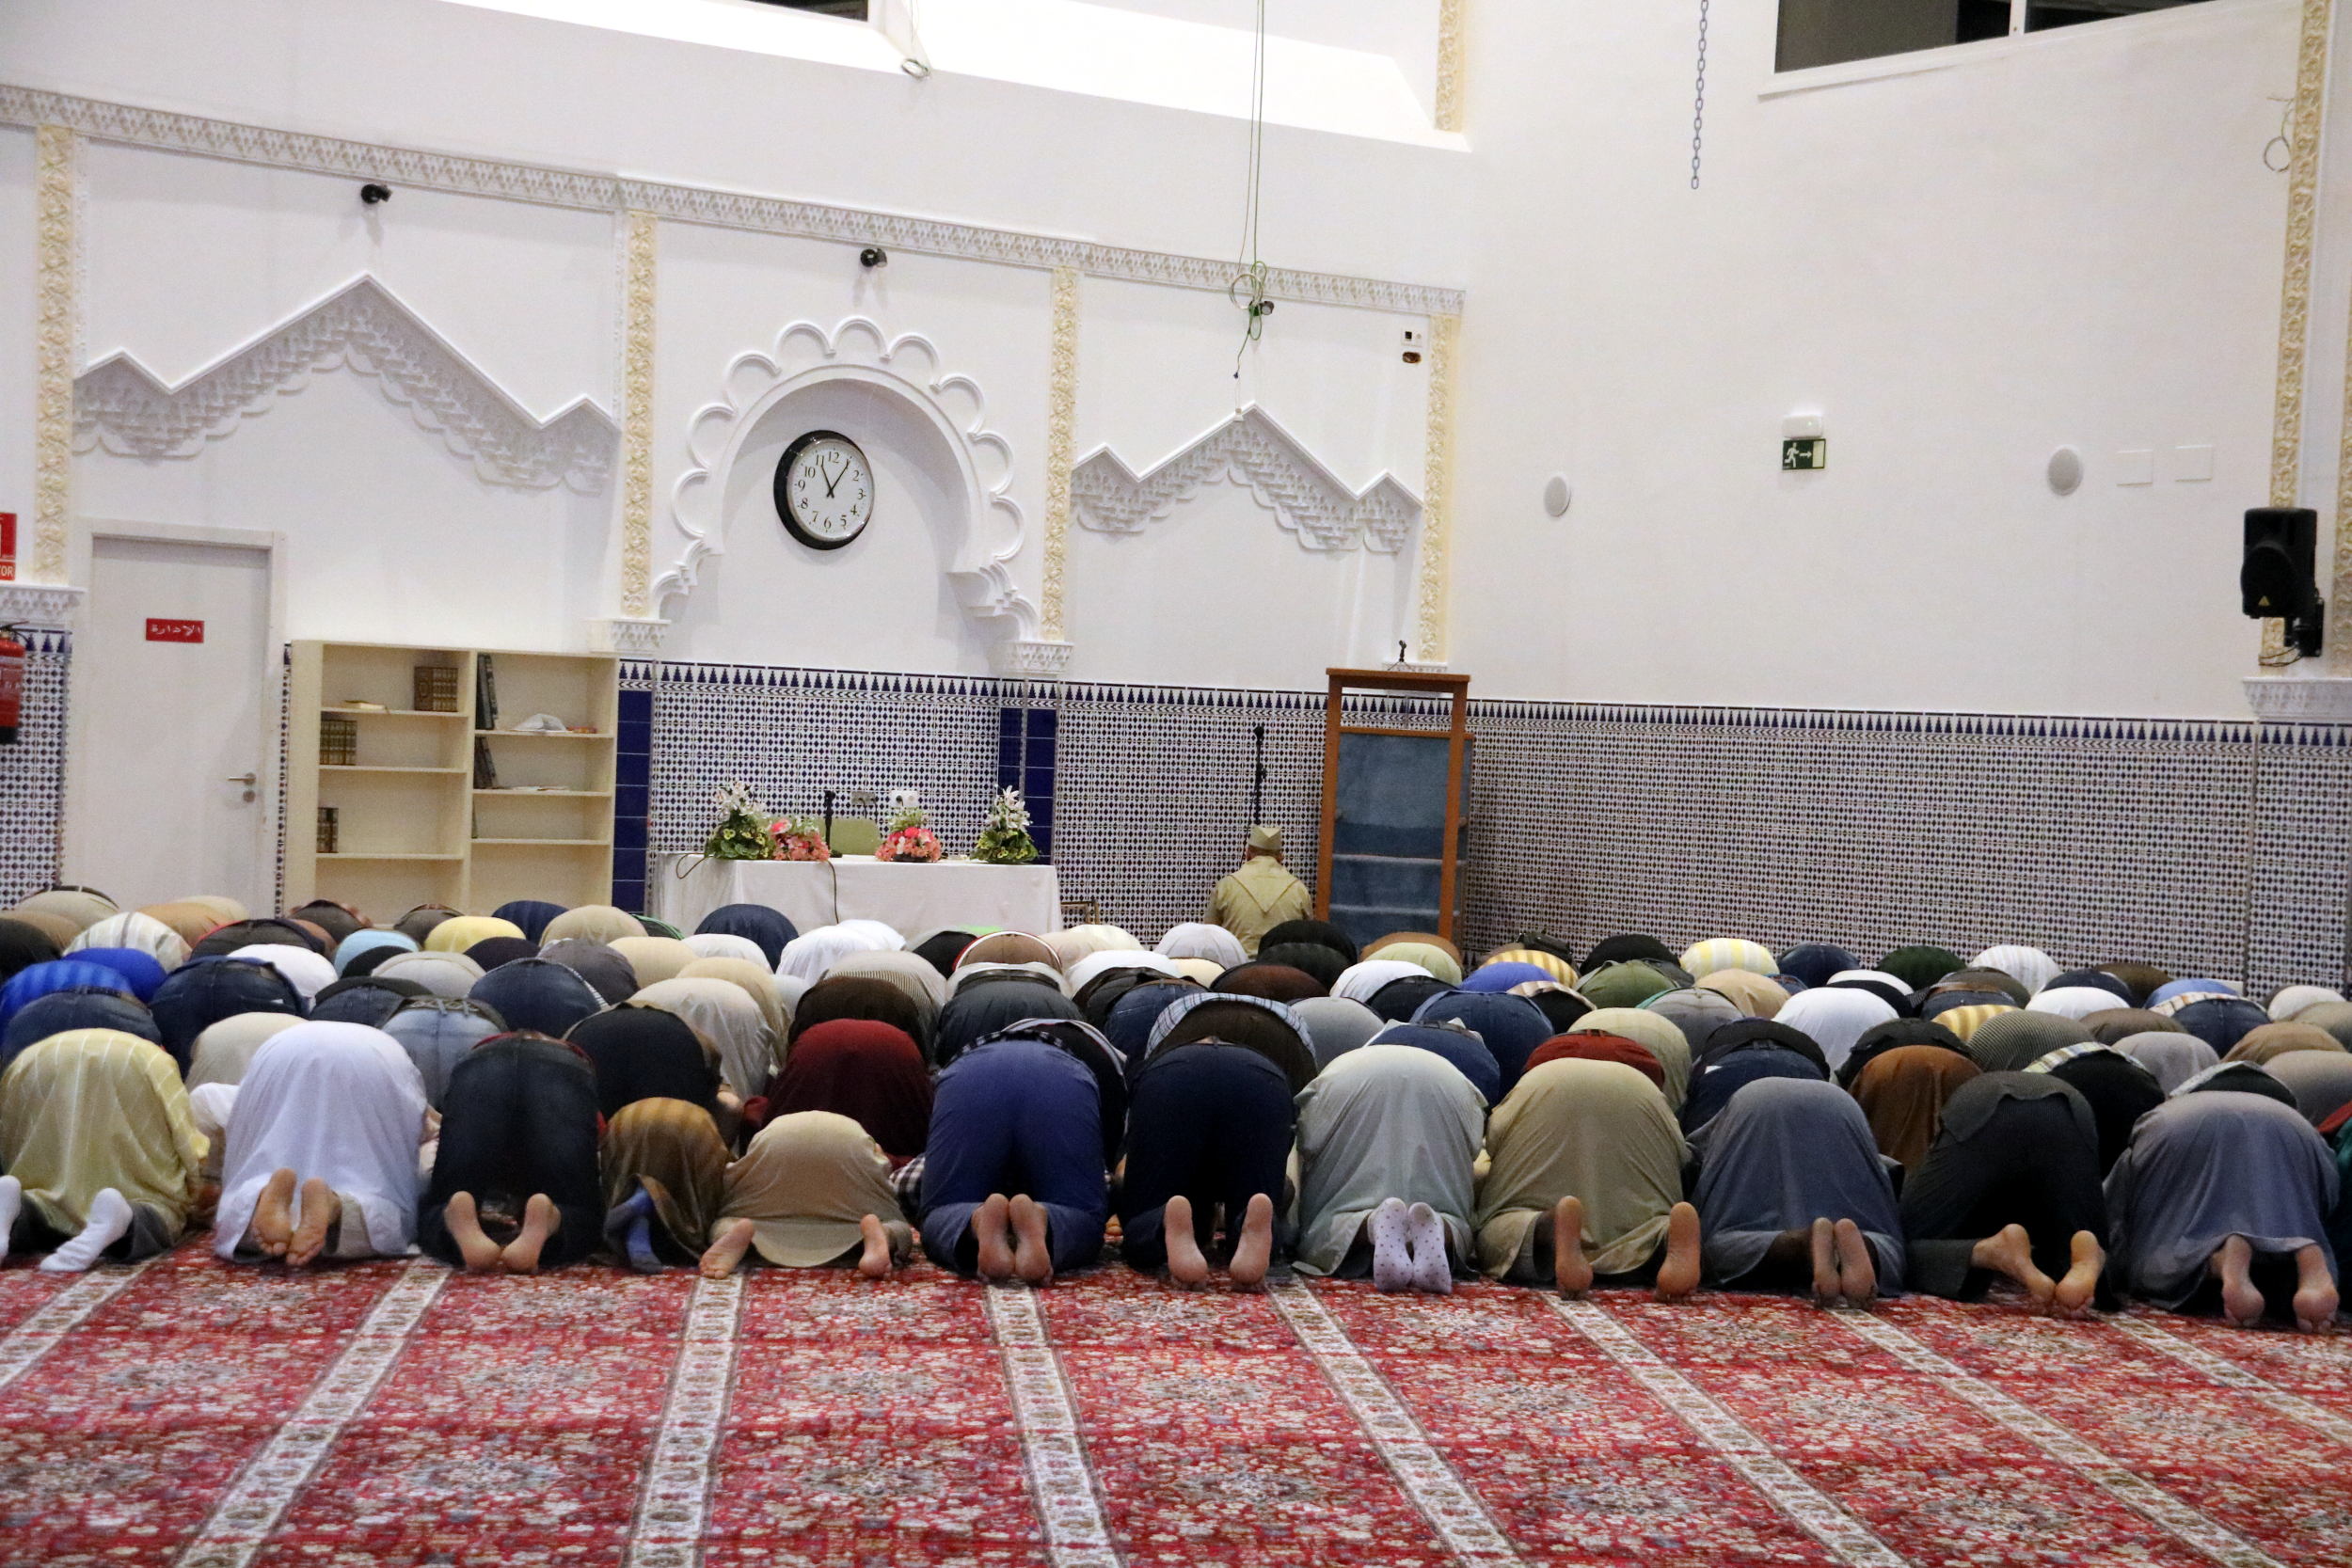 L'OMS demana valorar "la cancel·lació de reunions durant el ramadà"